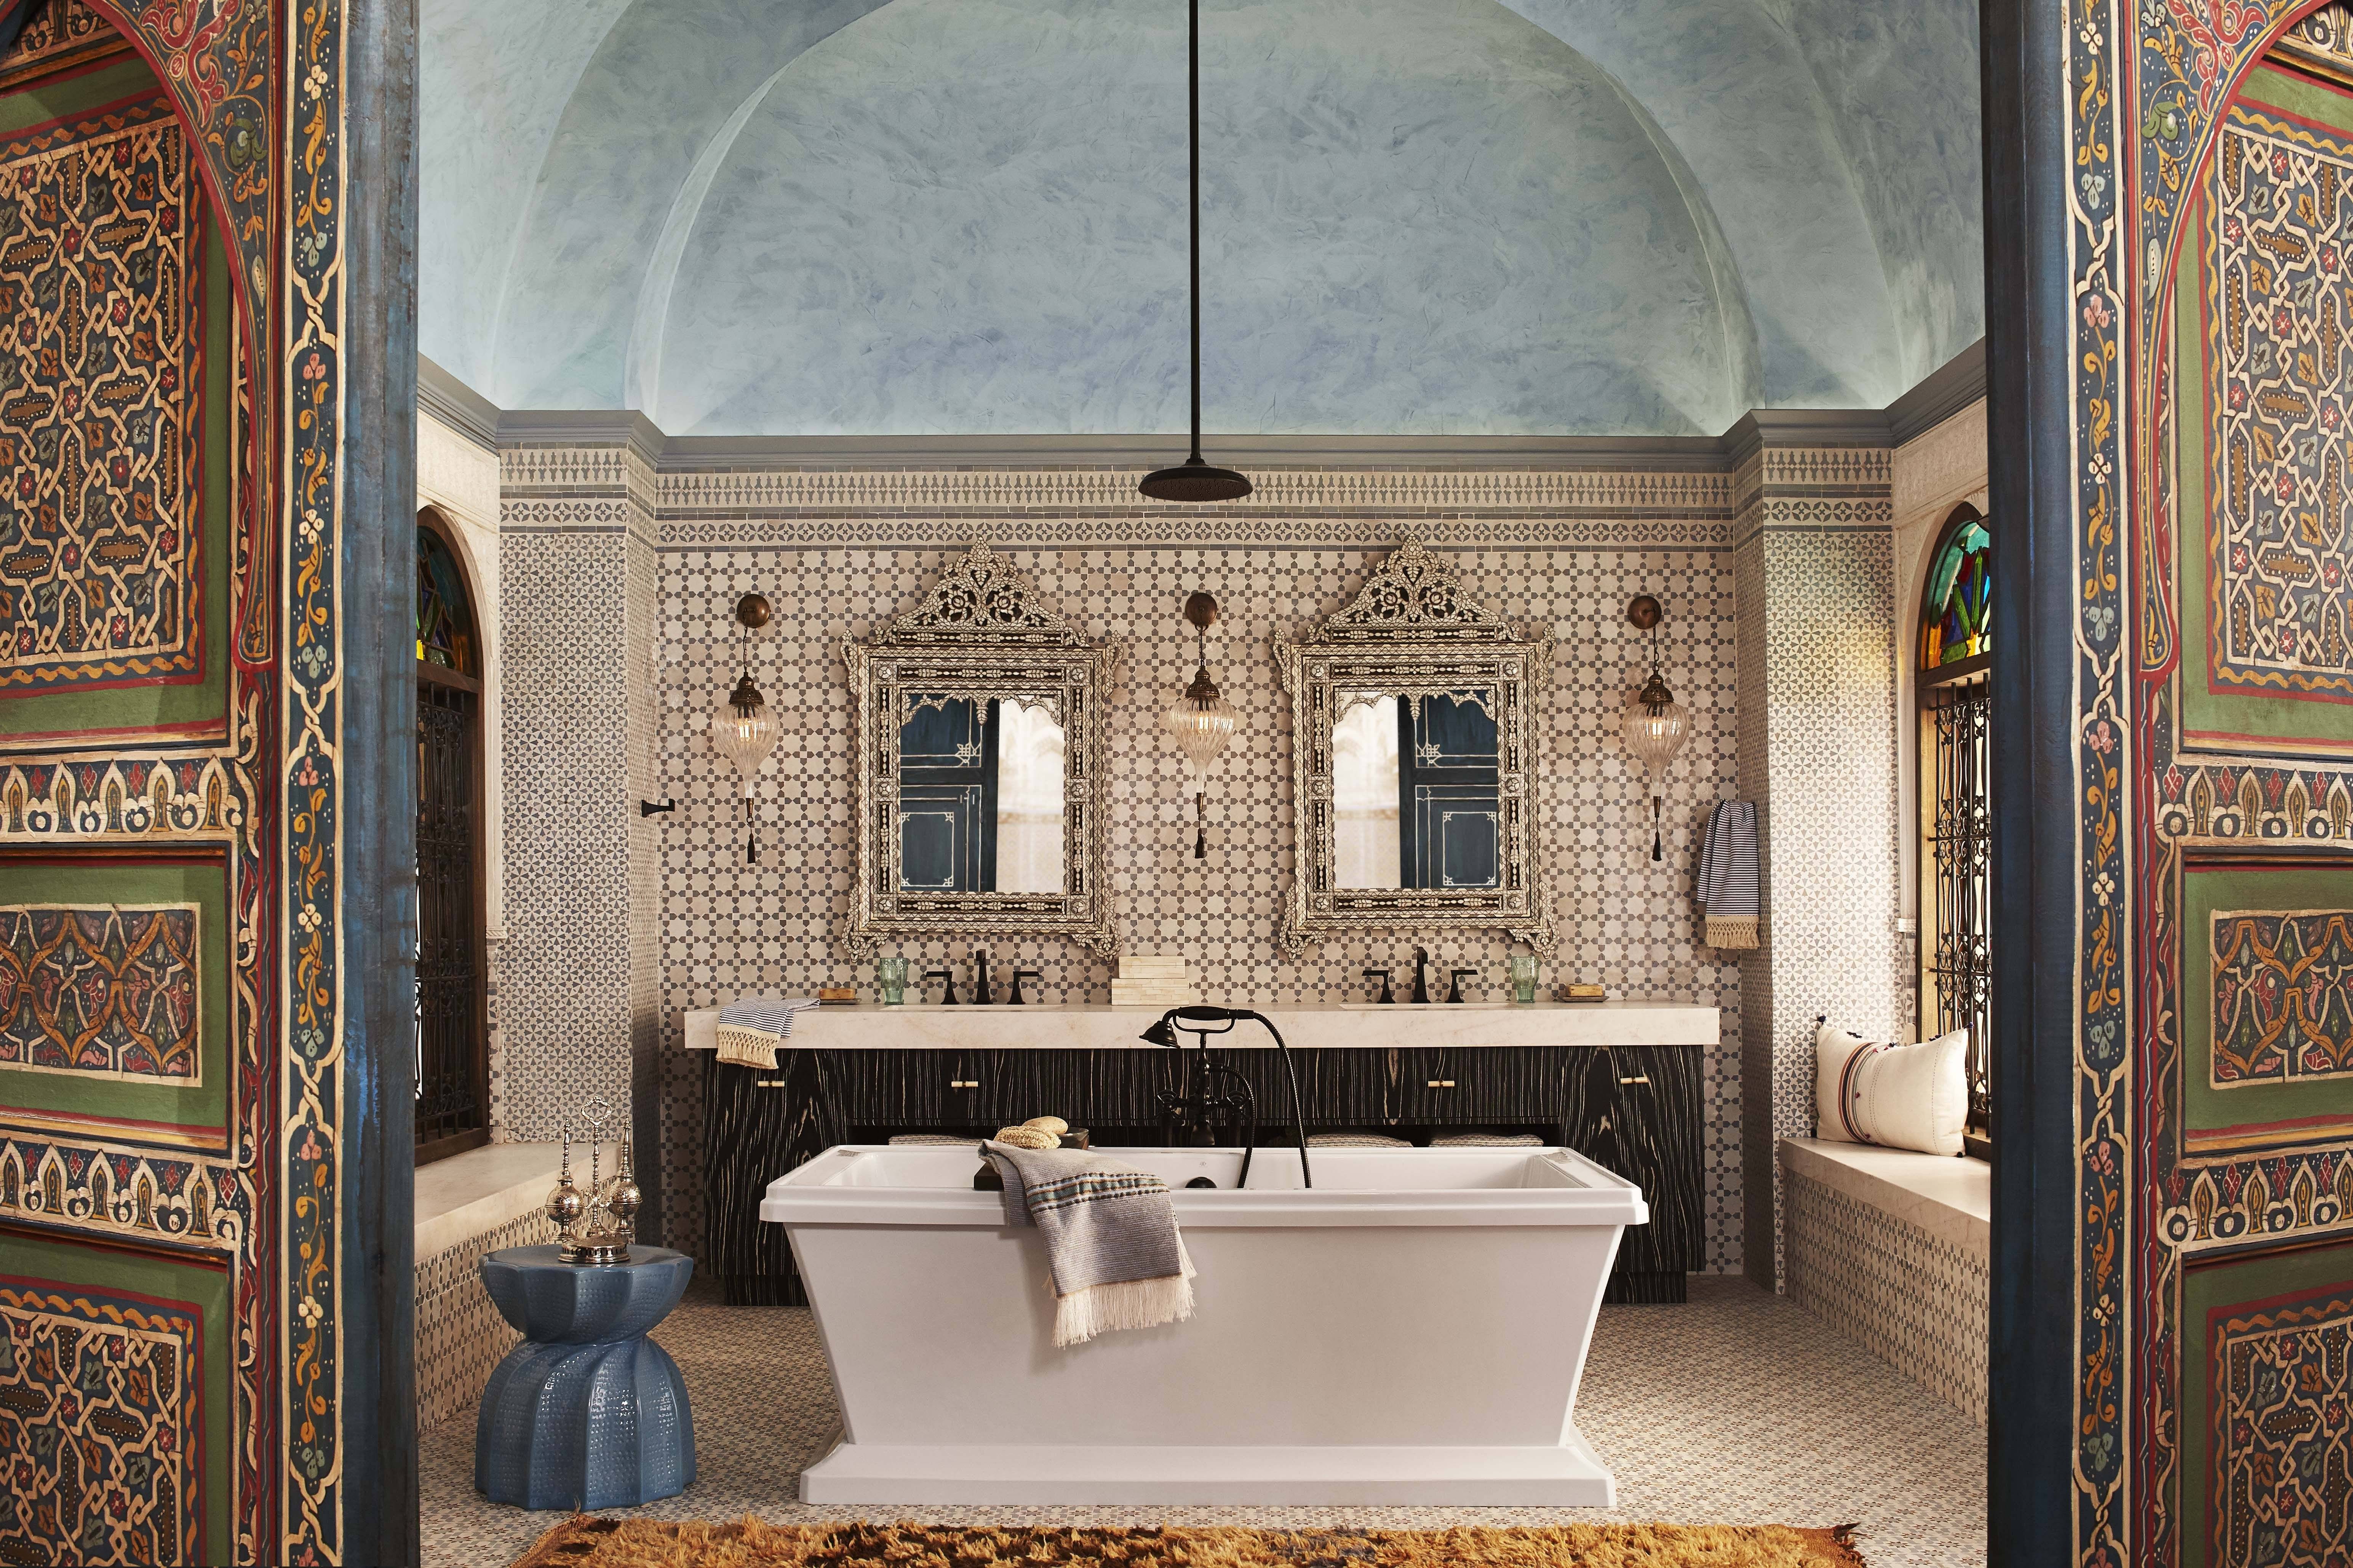 Ванная комната в марокканском стиле, фото абрабского и египетского дизайнов